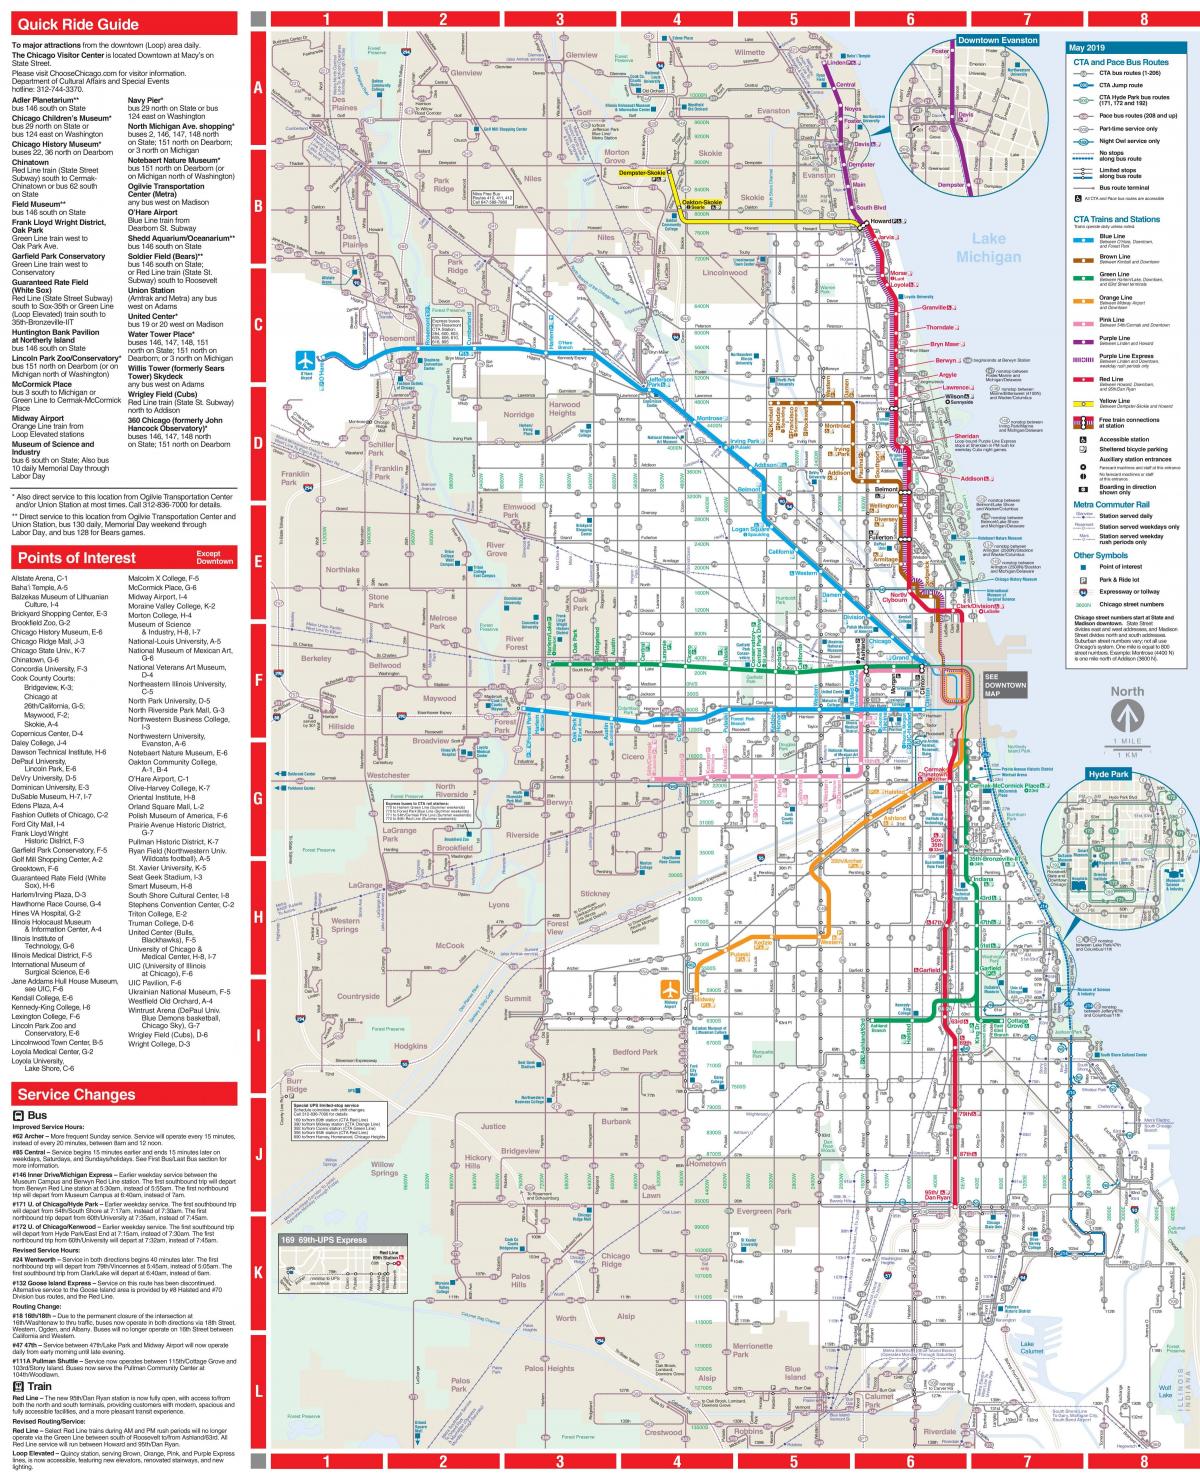 Plan des transports publics de Chicago